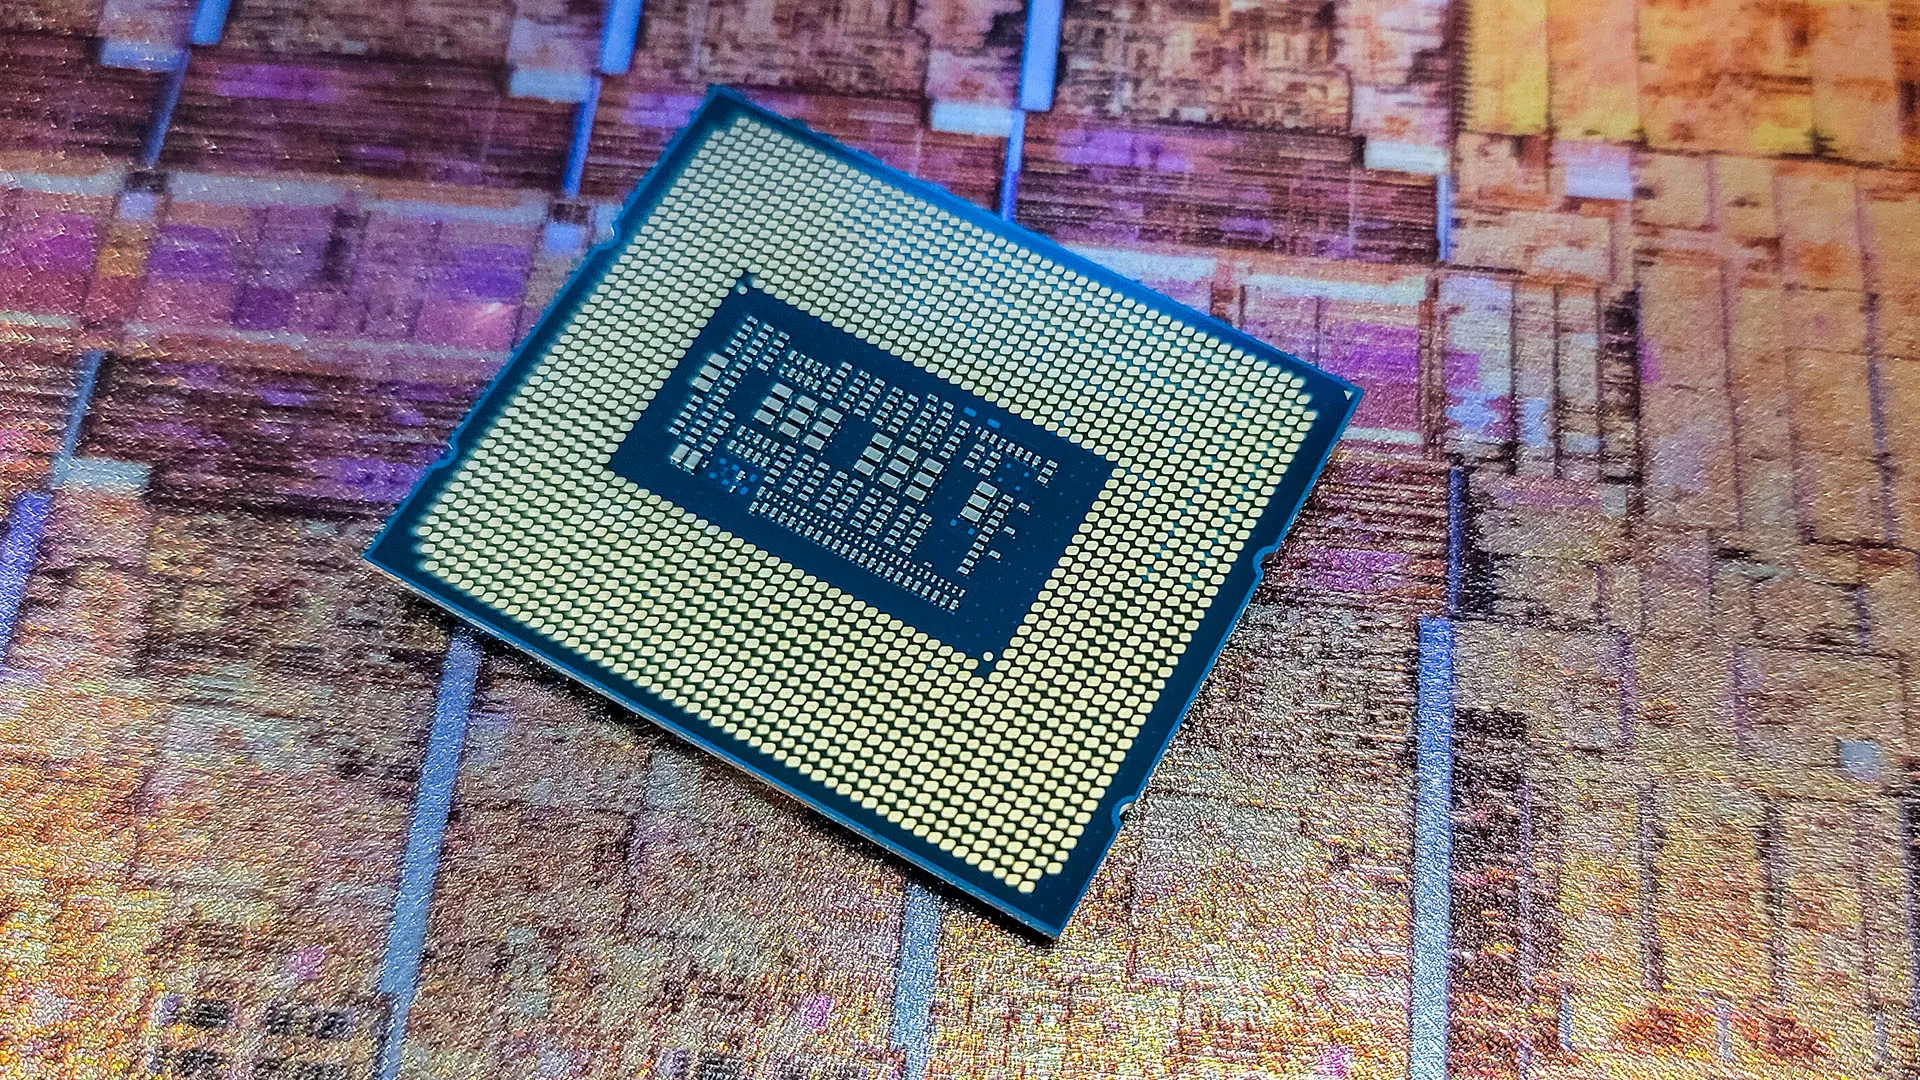 Η Intel έχει βάλει στόχο να πάρει πίσω το μερίδιο που έχει καρπωθεί η AMD στην αγορά επεξεργαστών